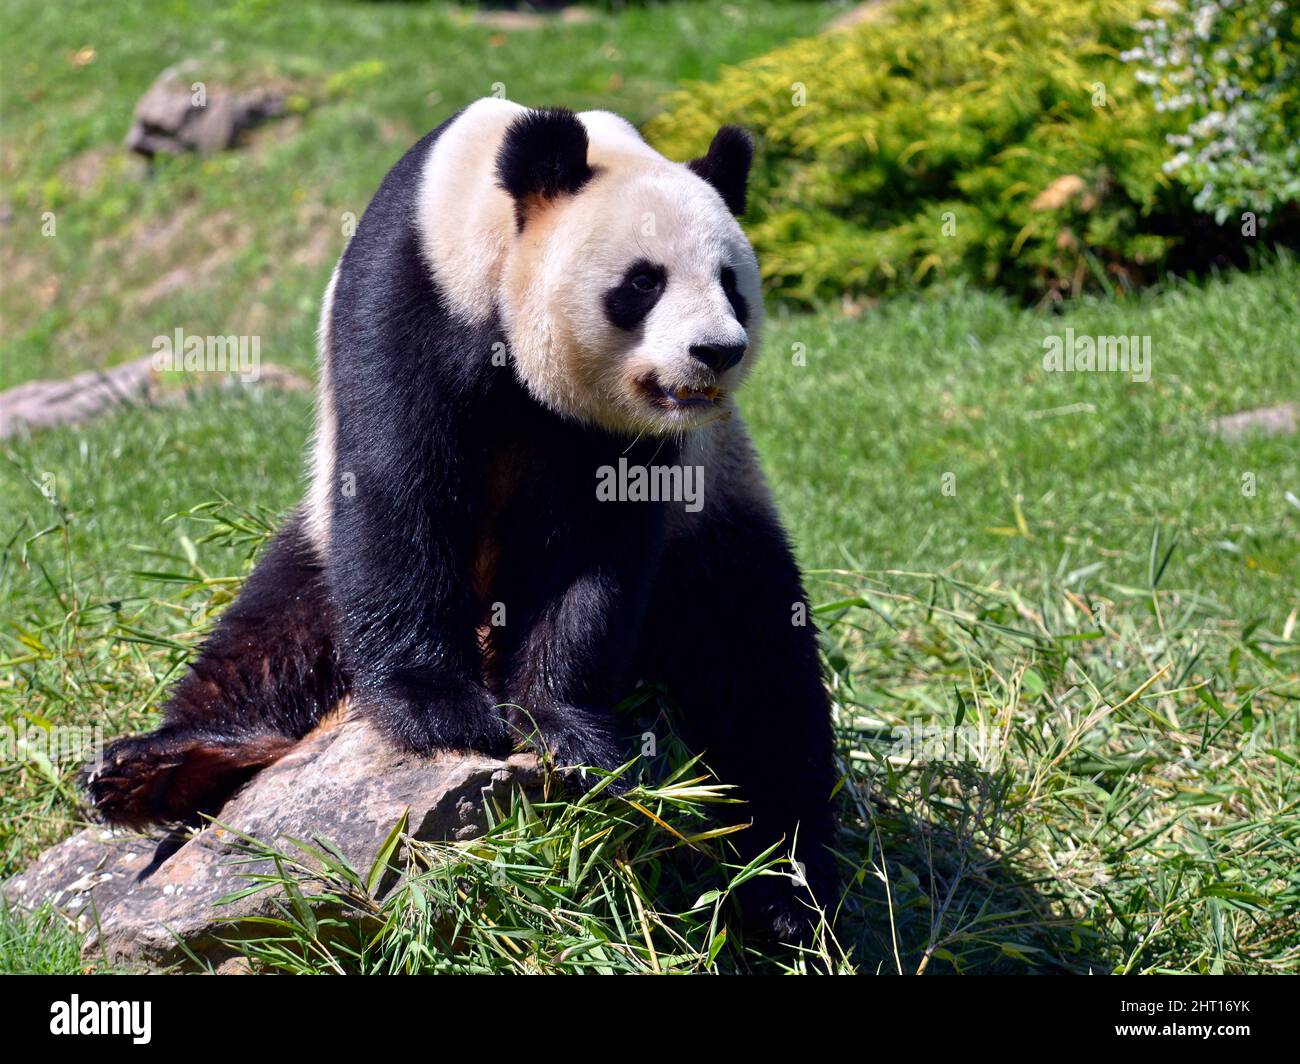 Giant panda (Ailuropoda melanoleuca) sitting on a stone Stock Photo